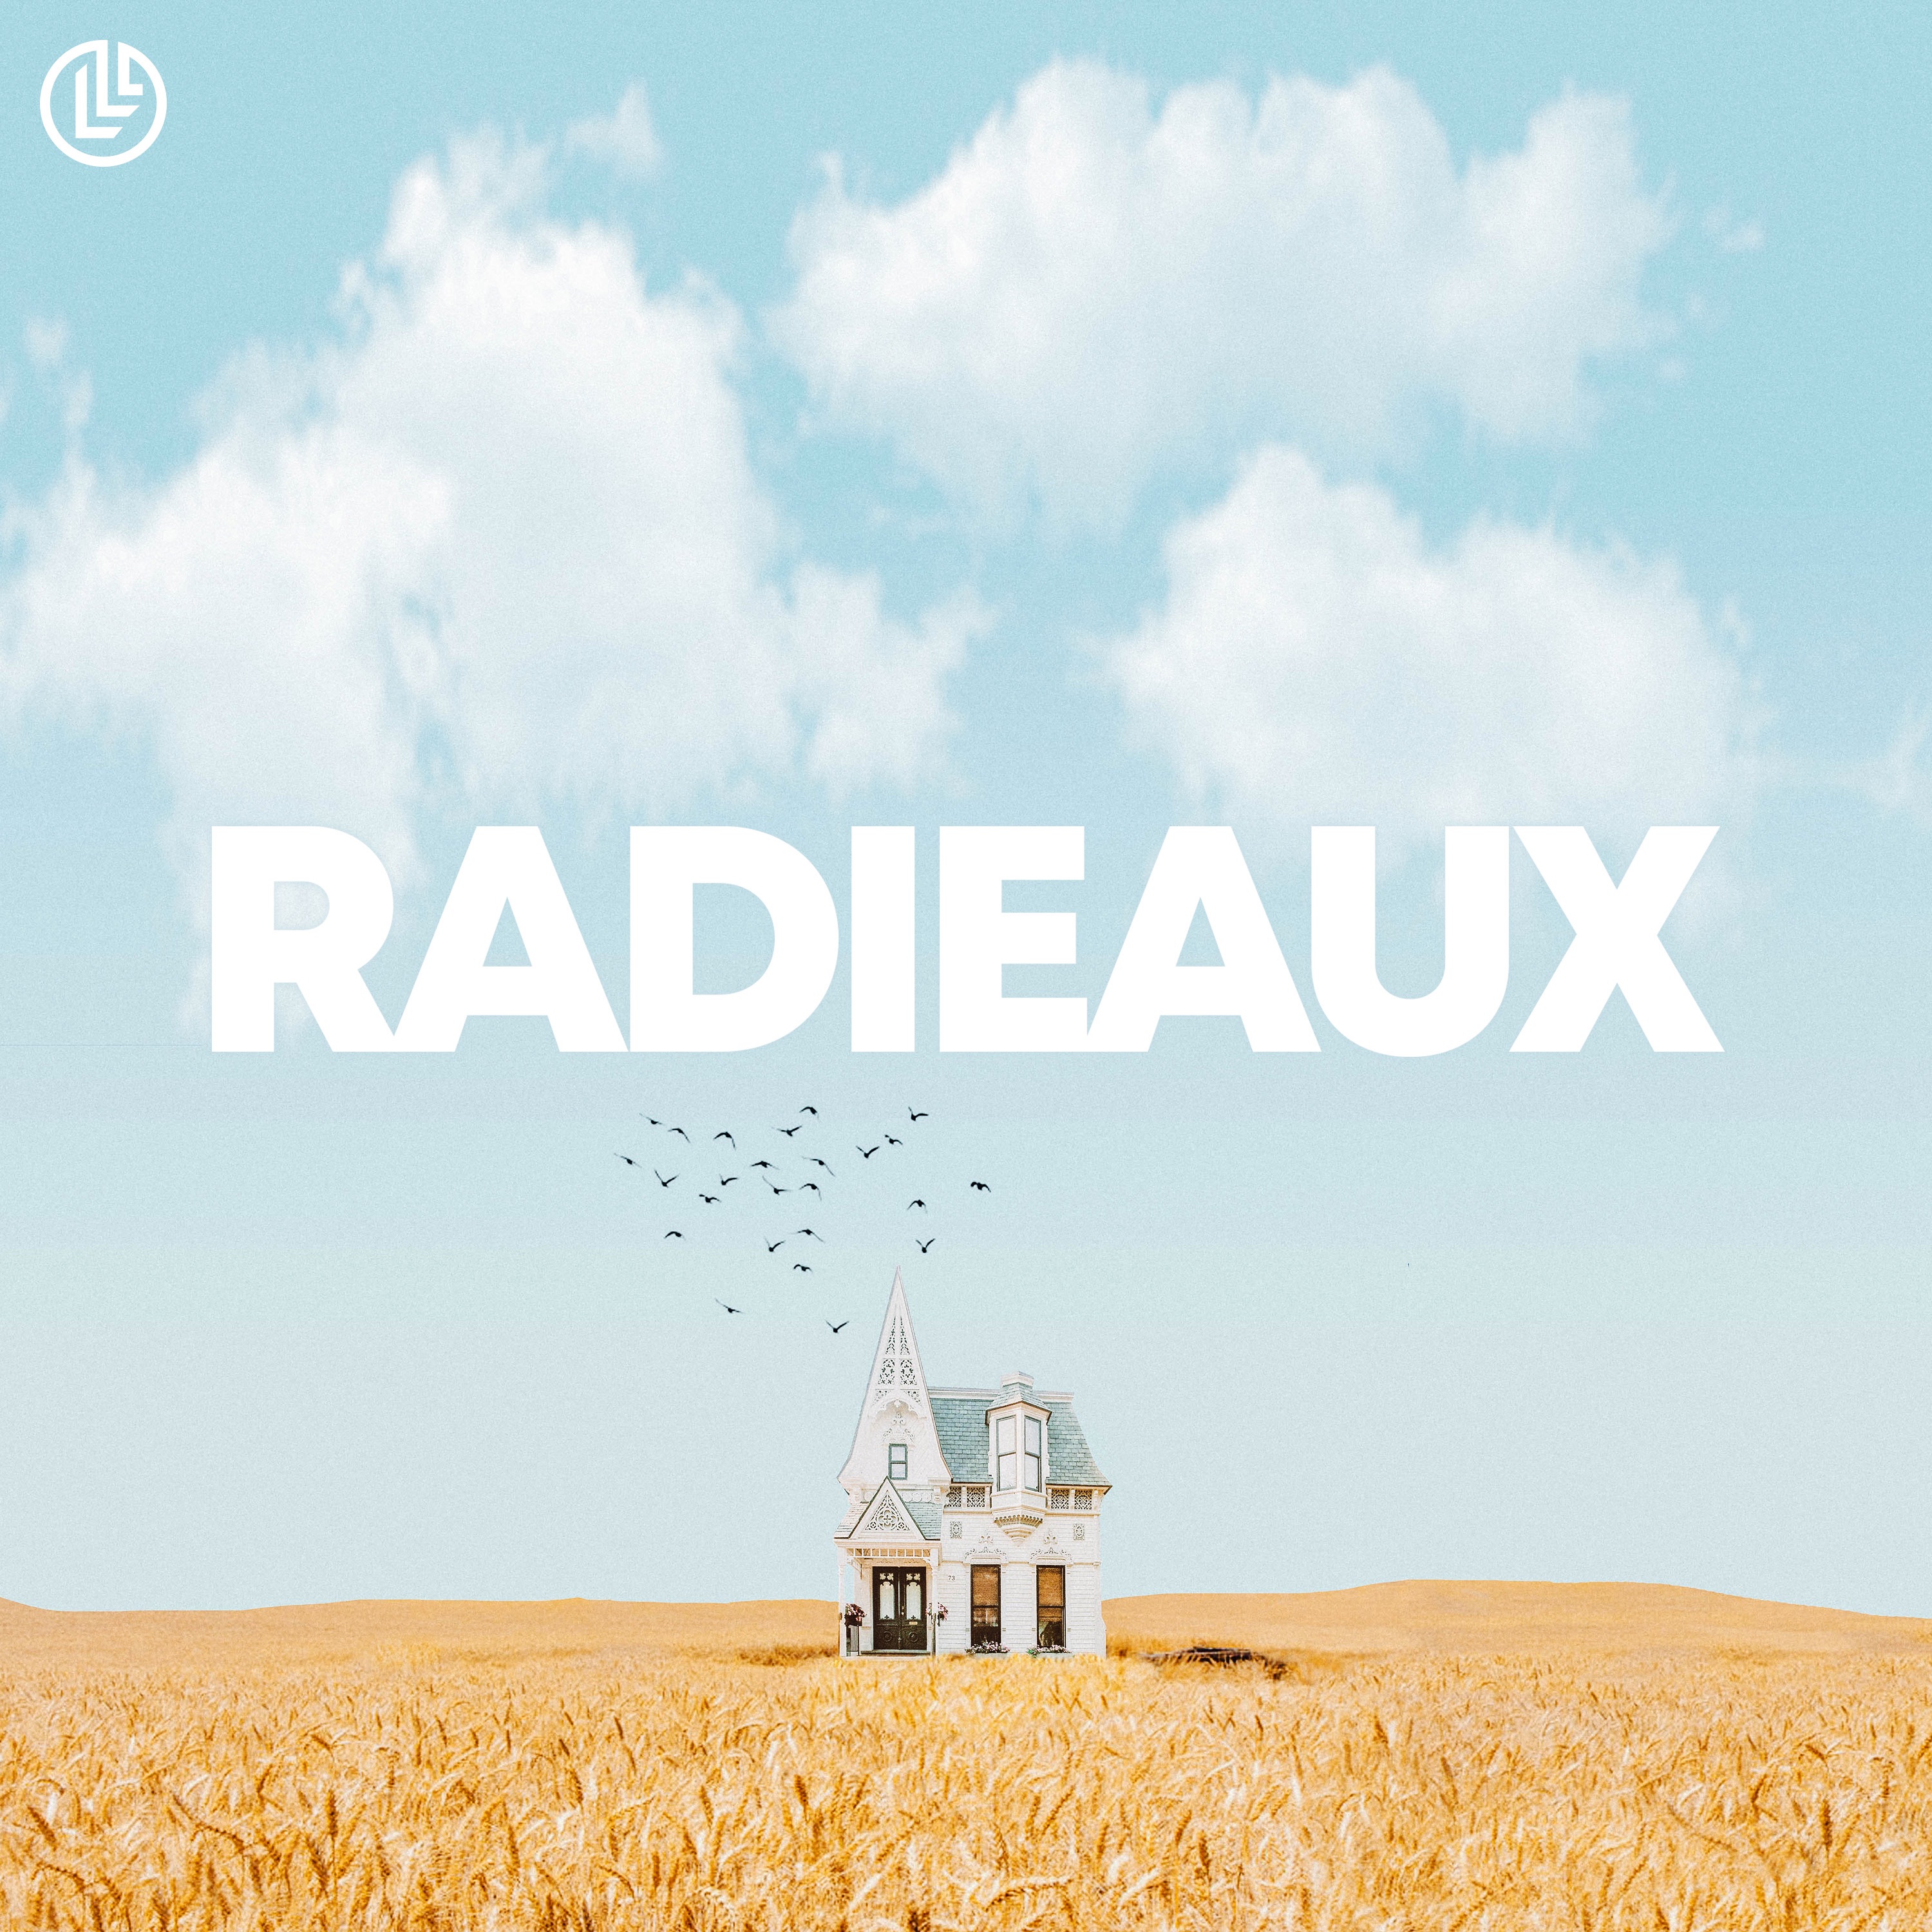 Radieaux by Lulleaux